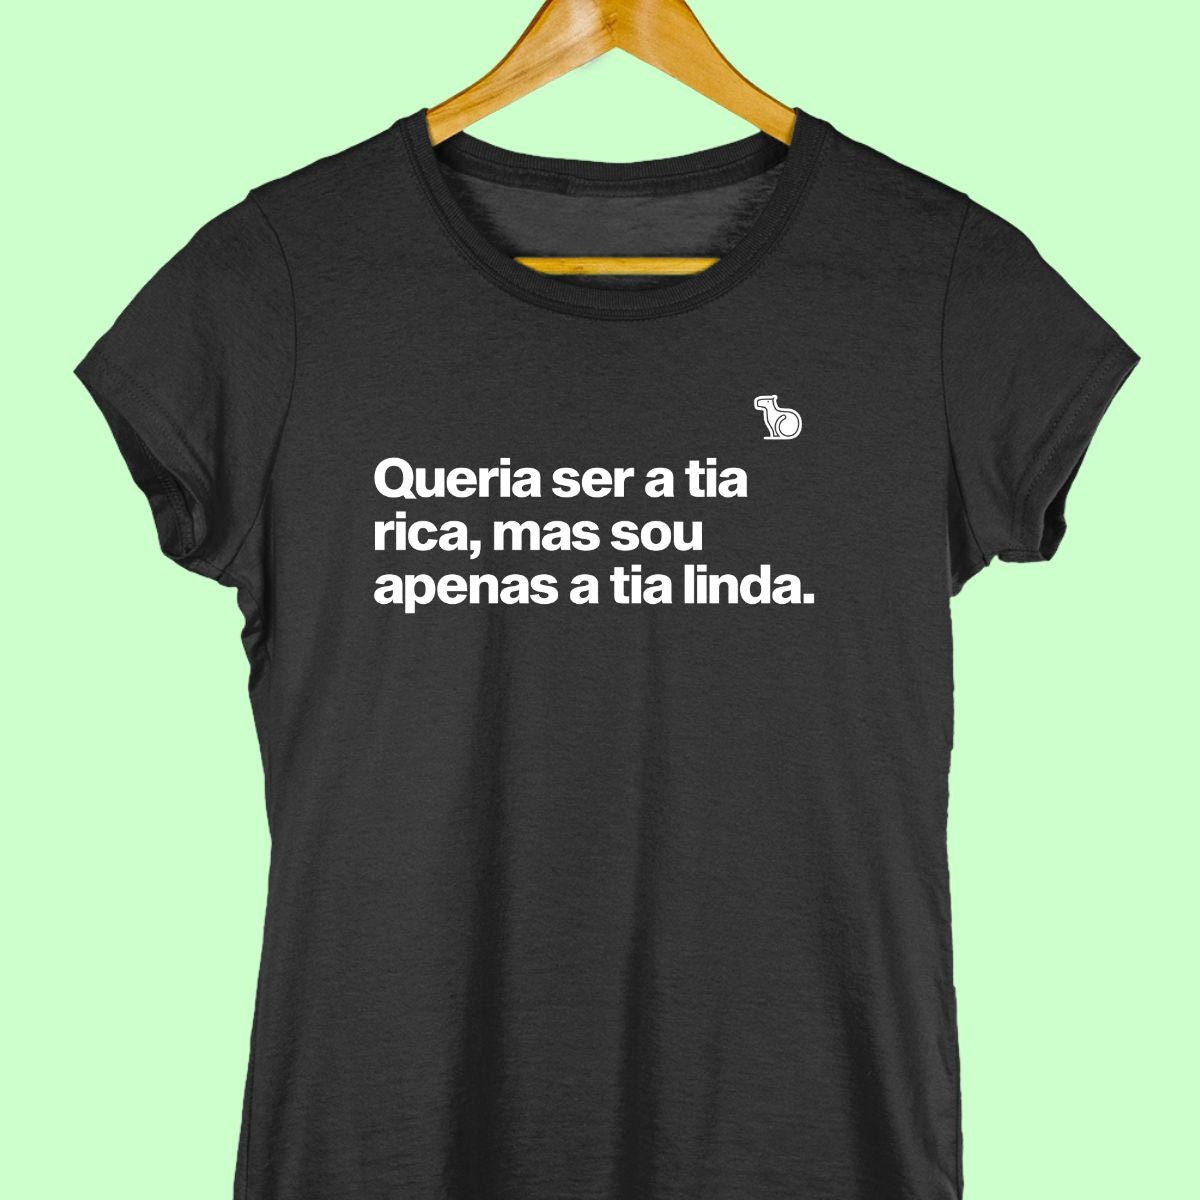 Camiseta com a frase "Queria ser a tia rica, mas sou apenas a tia linda." feminina preta.